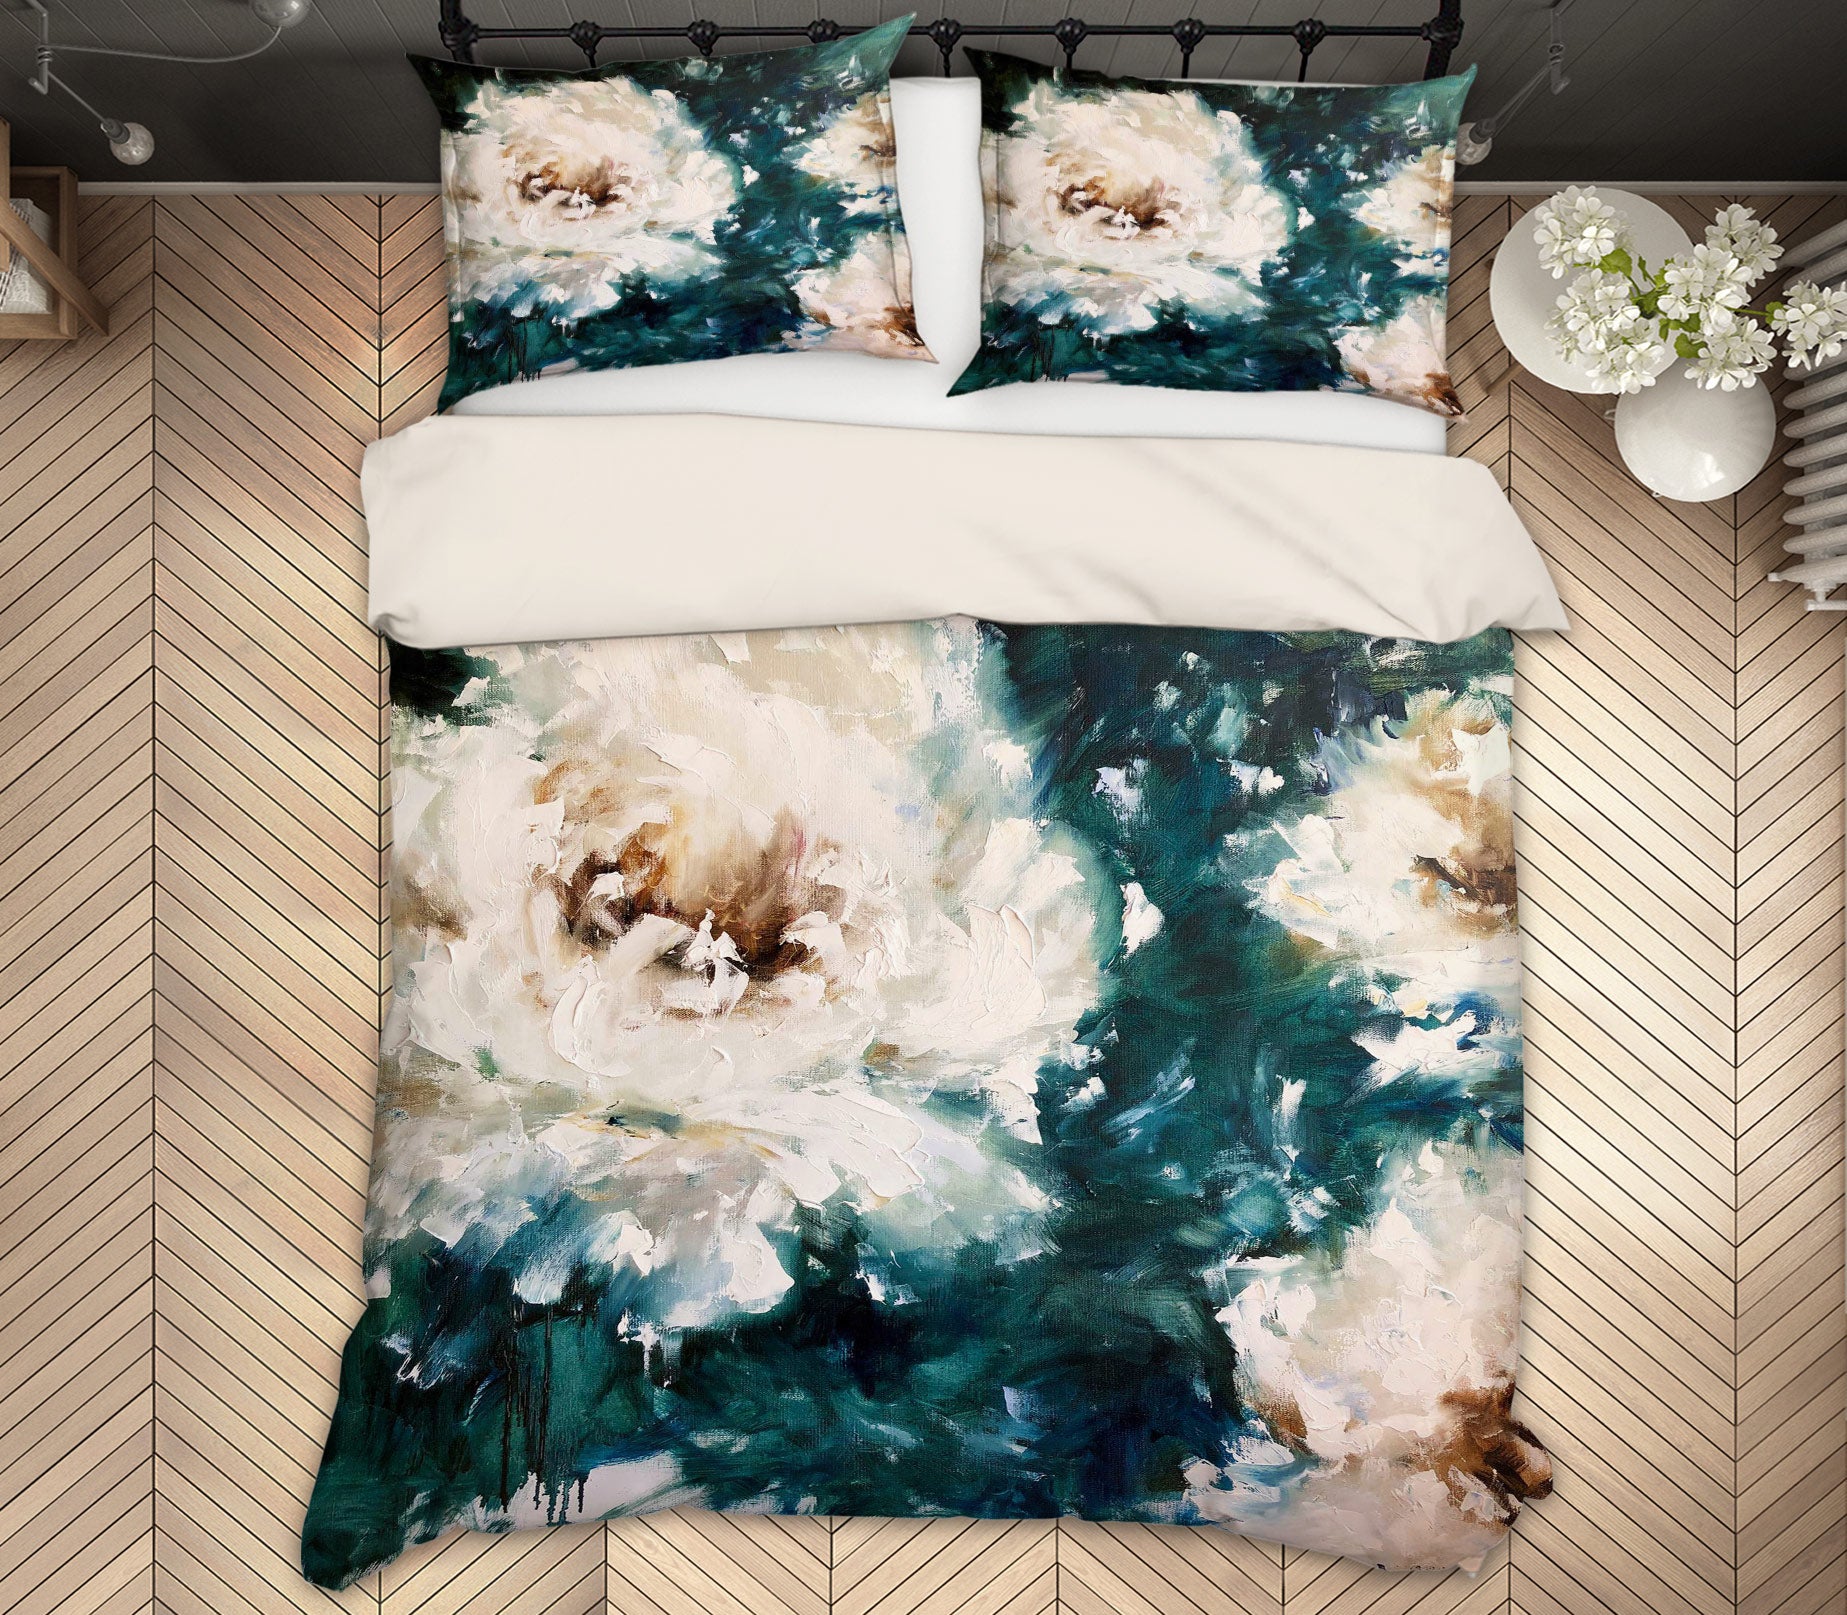 3D White Flower 473 Skromova Marina Bedding Bed Pillowcases Quilt